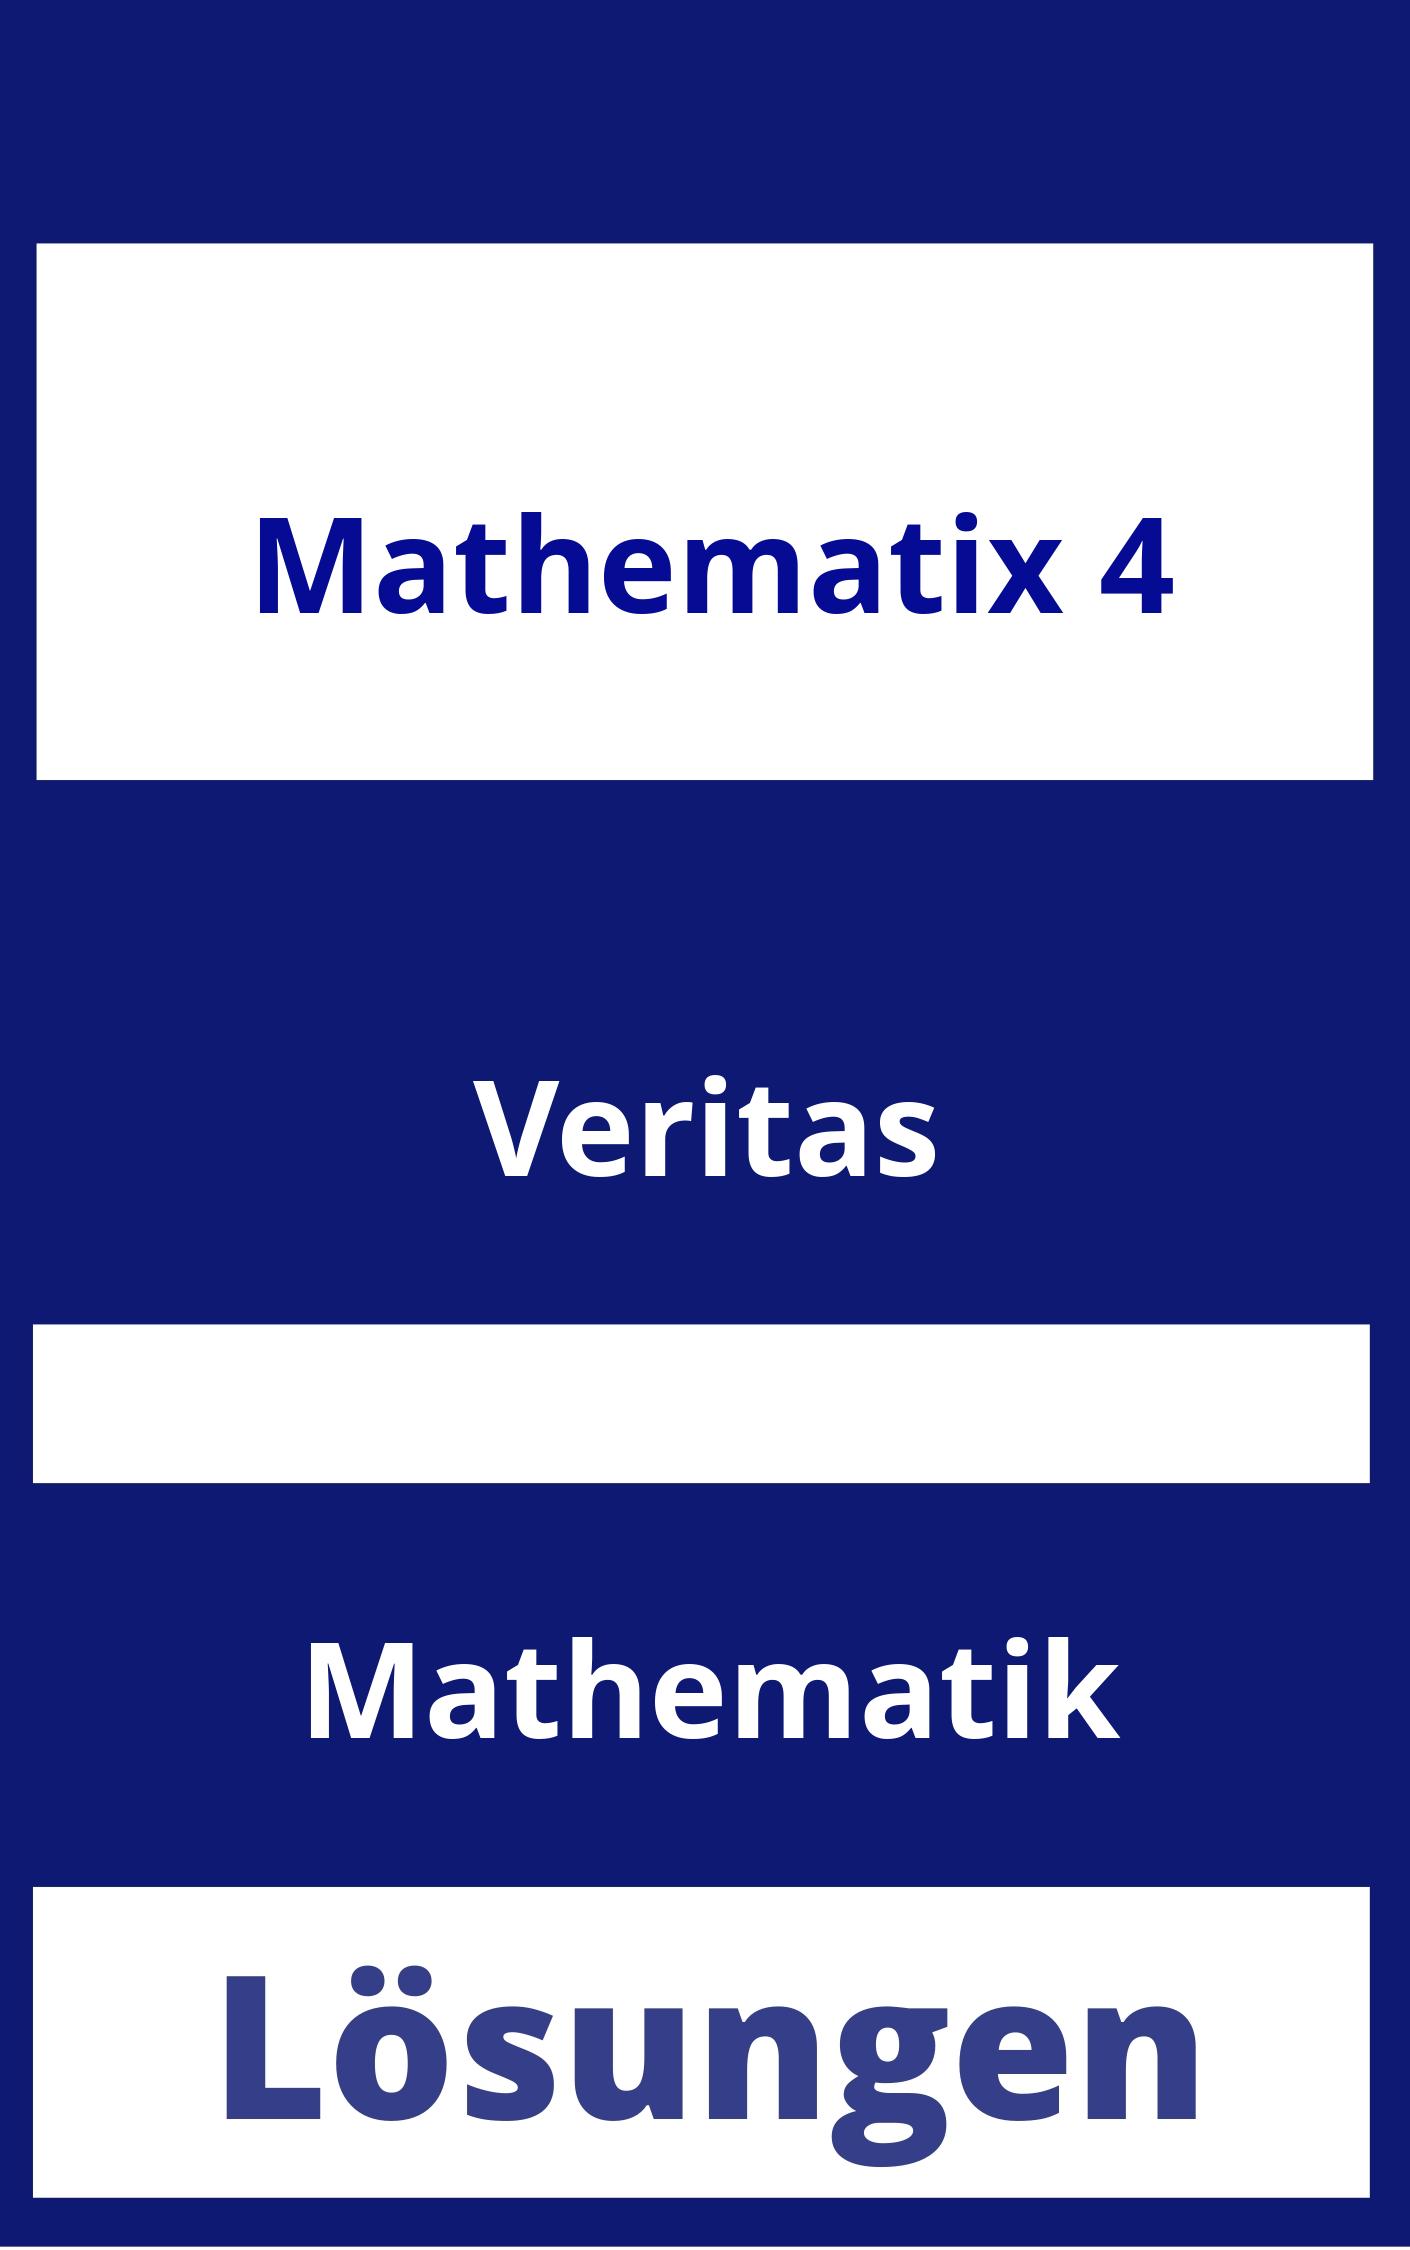 Mathematix 4 Lösungen PDF